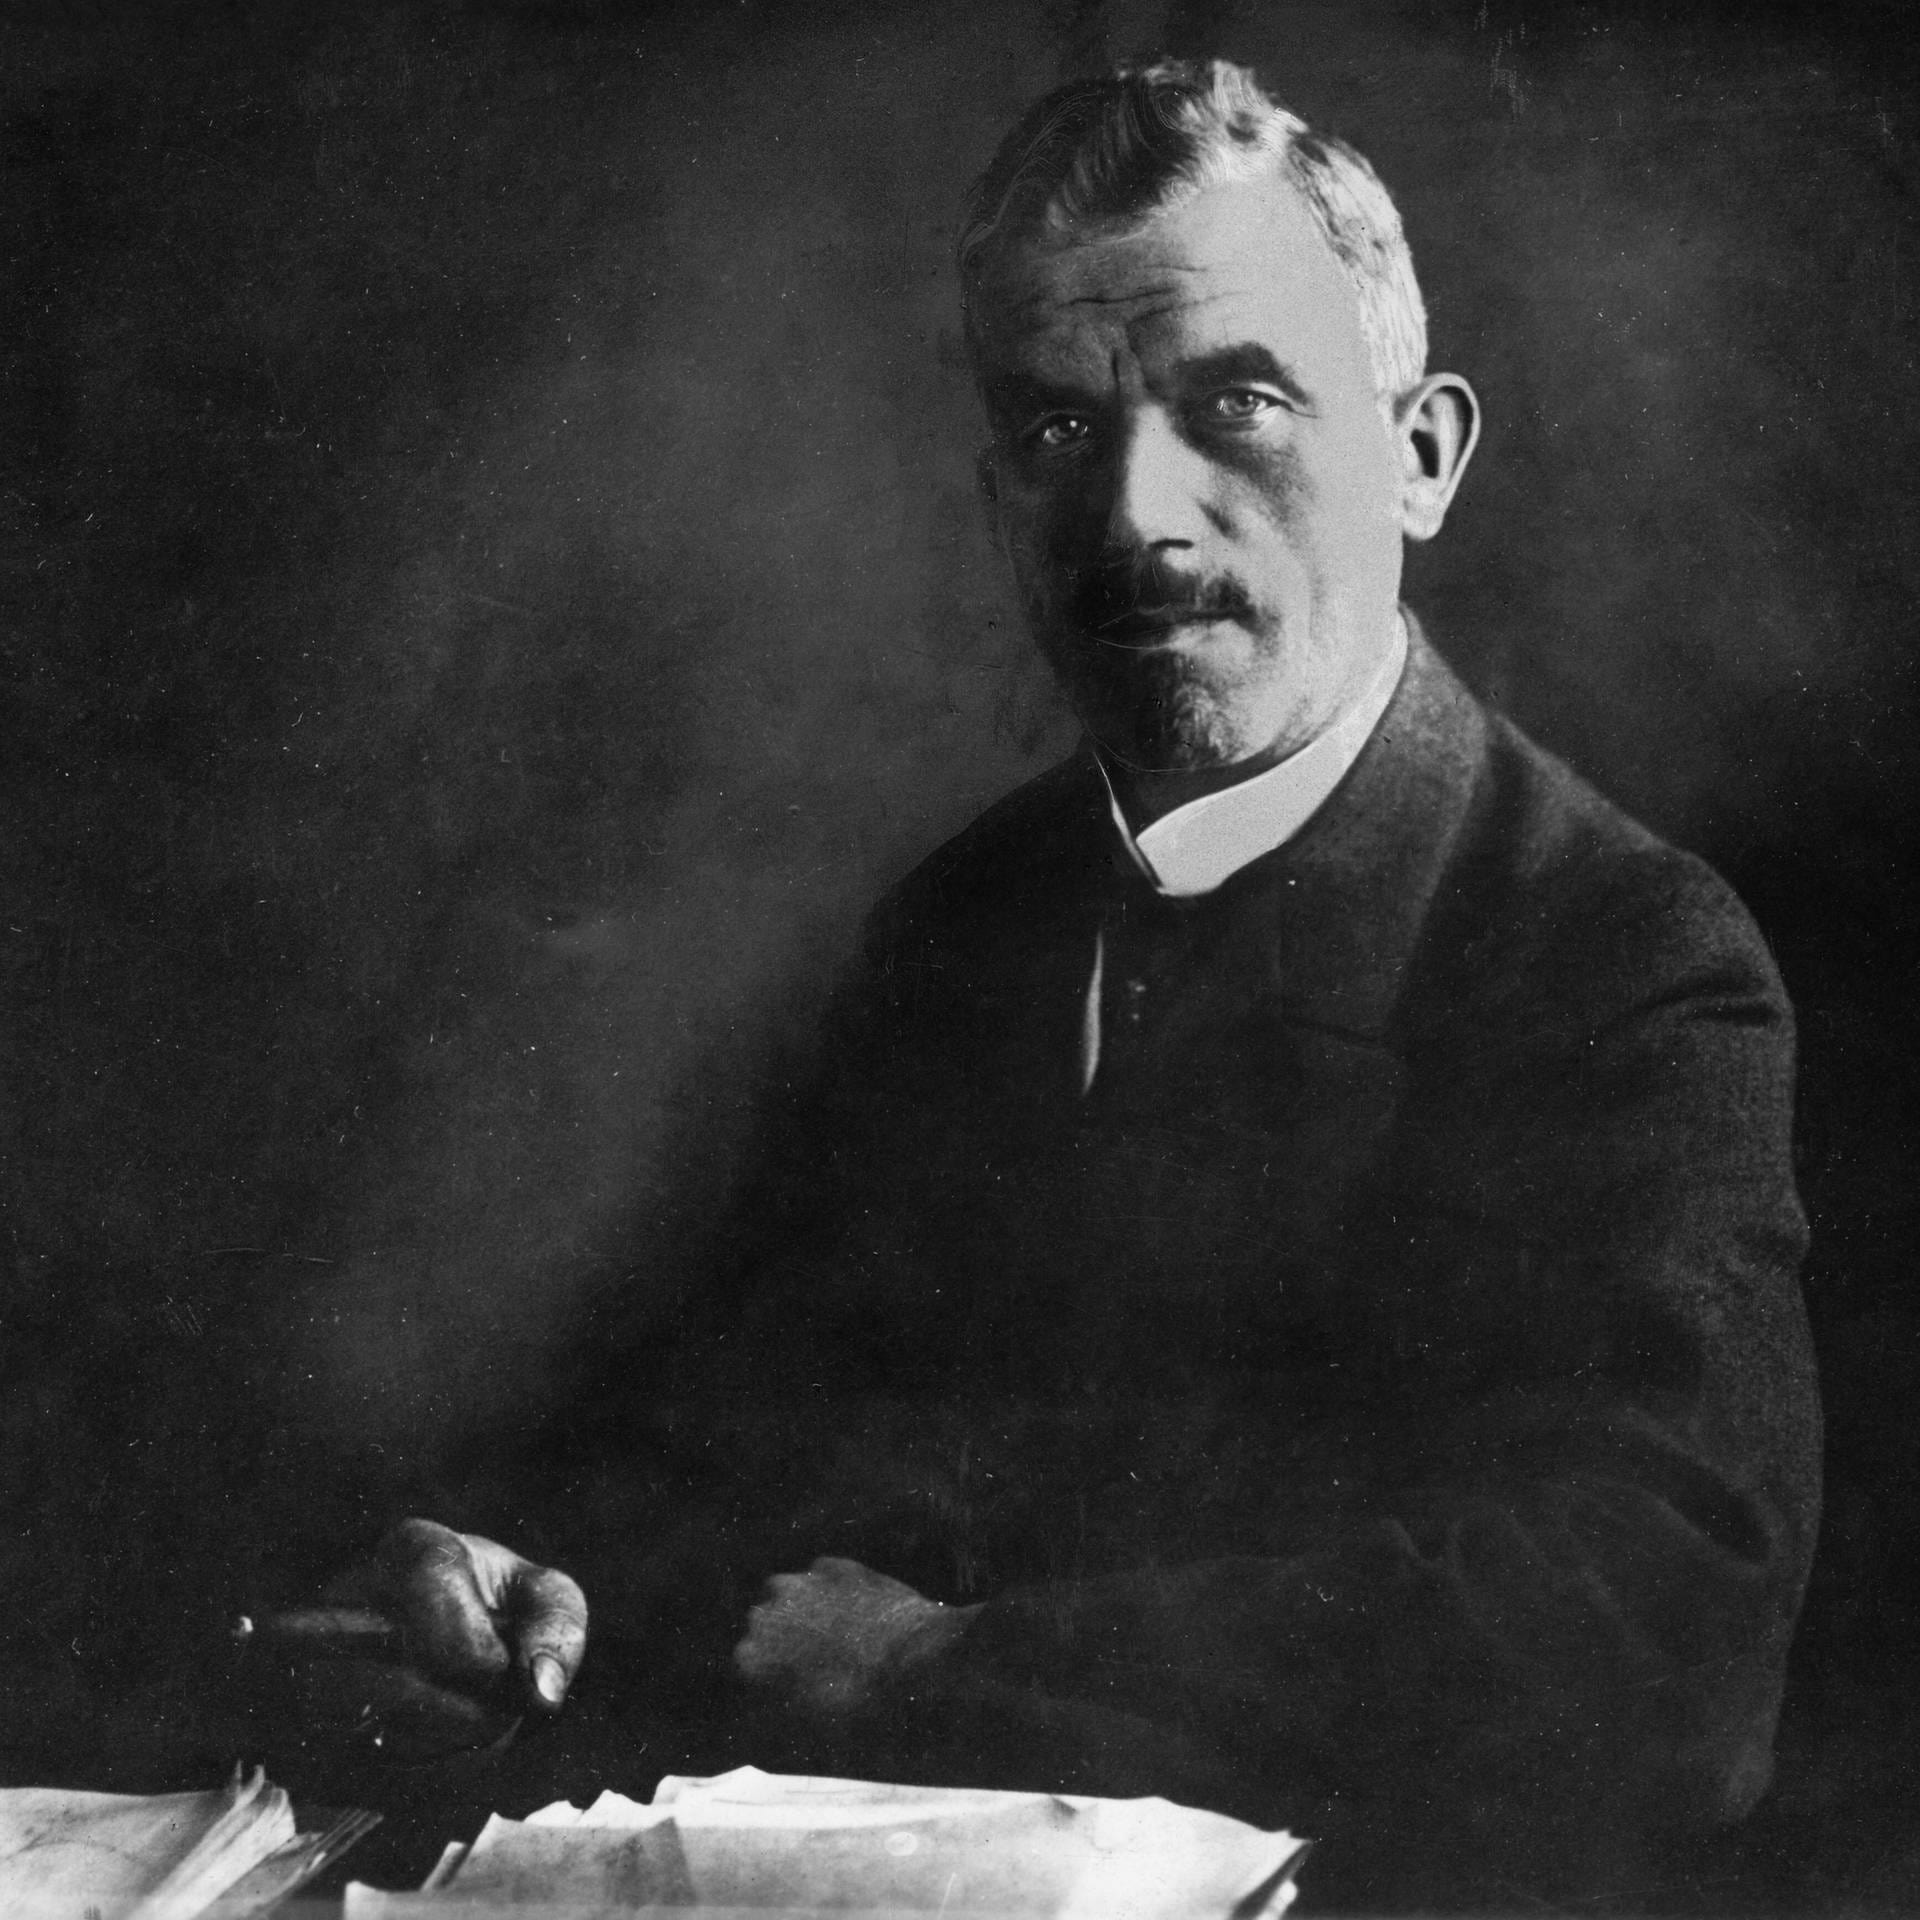 Erster Zeppelin hebt ab – Konstrukteur Ludwig Dürr erinnert sich | 1900 / 1938